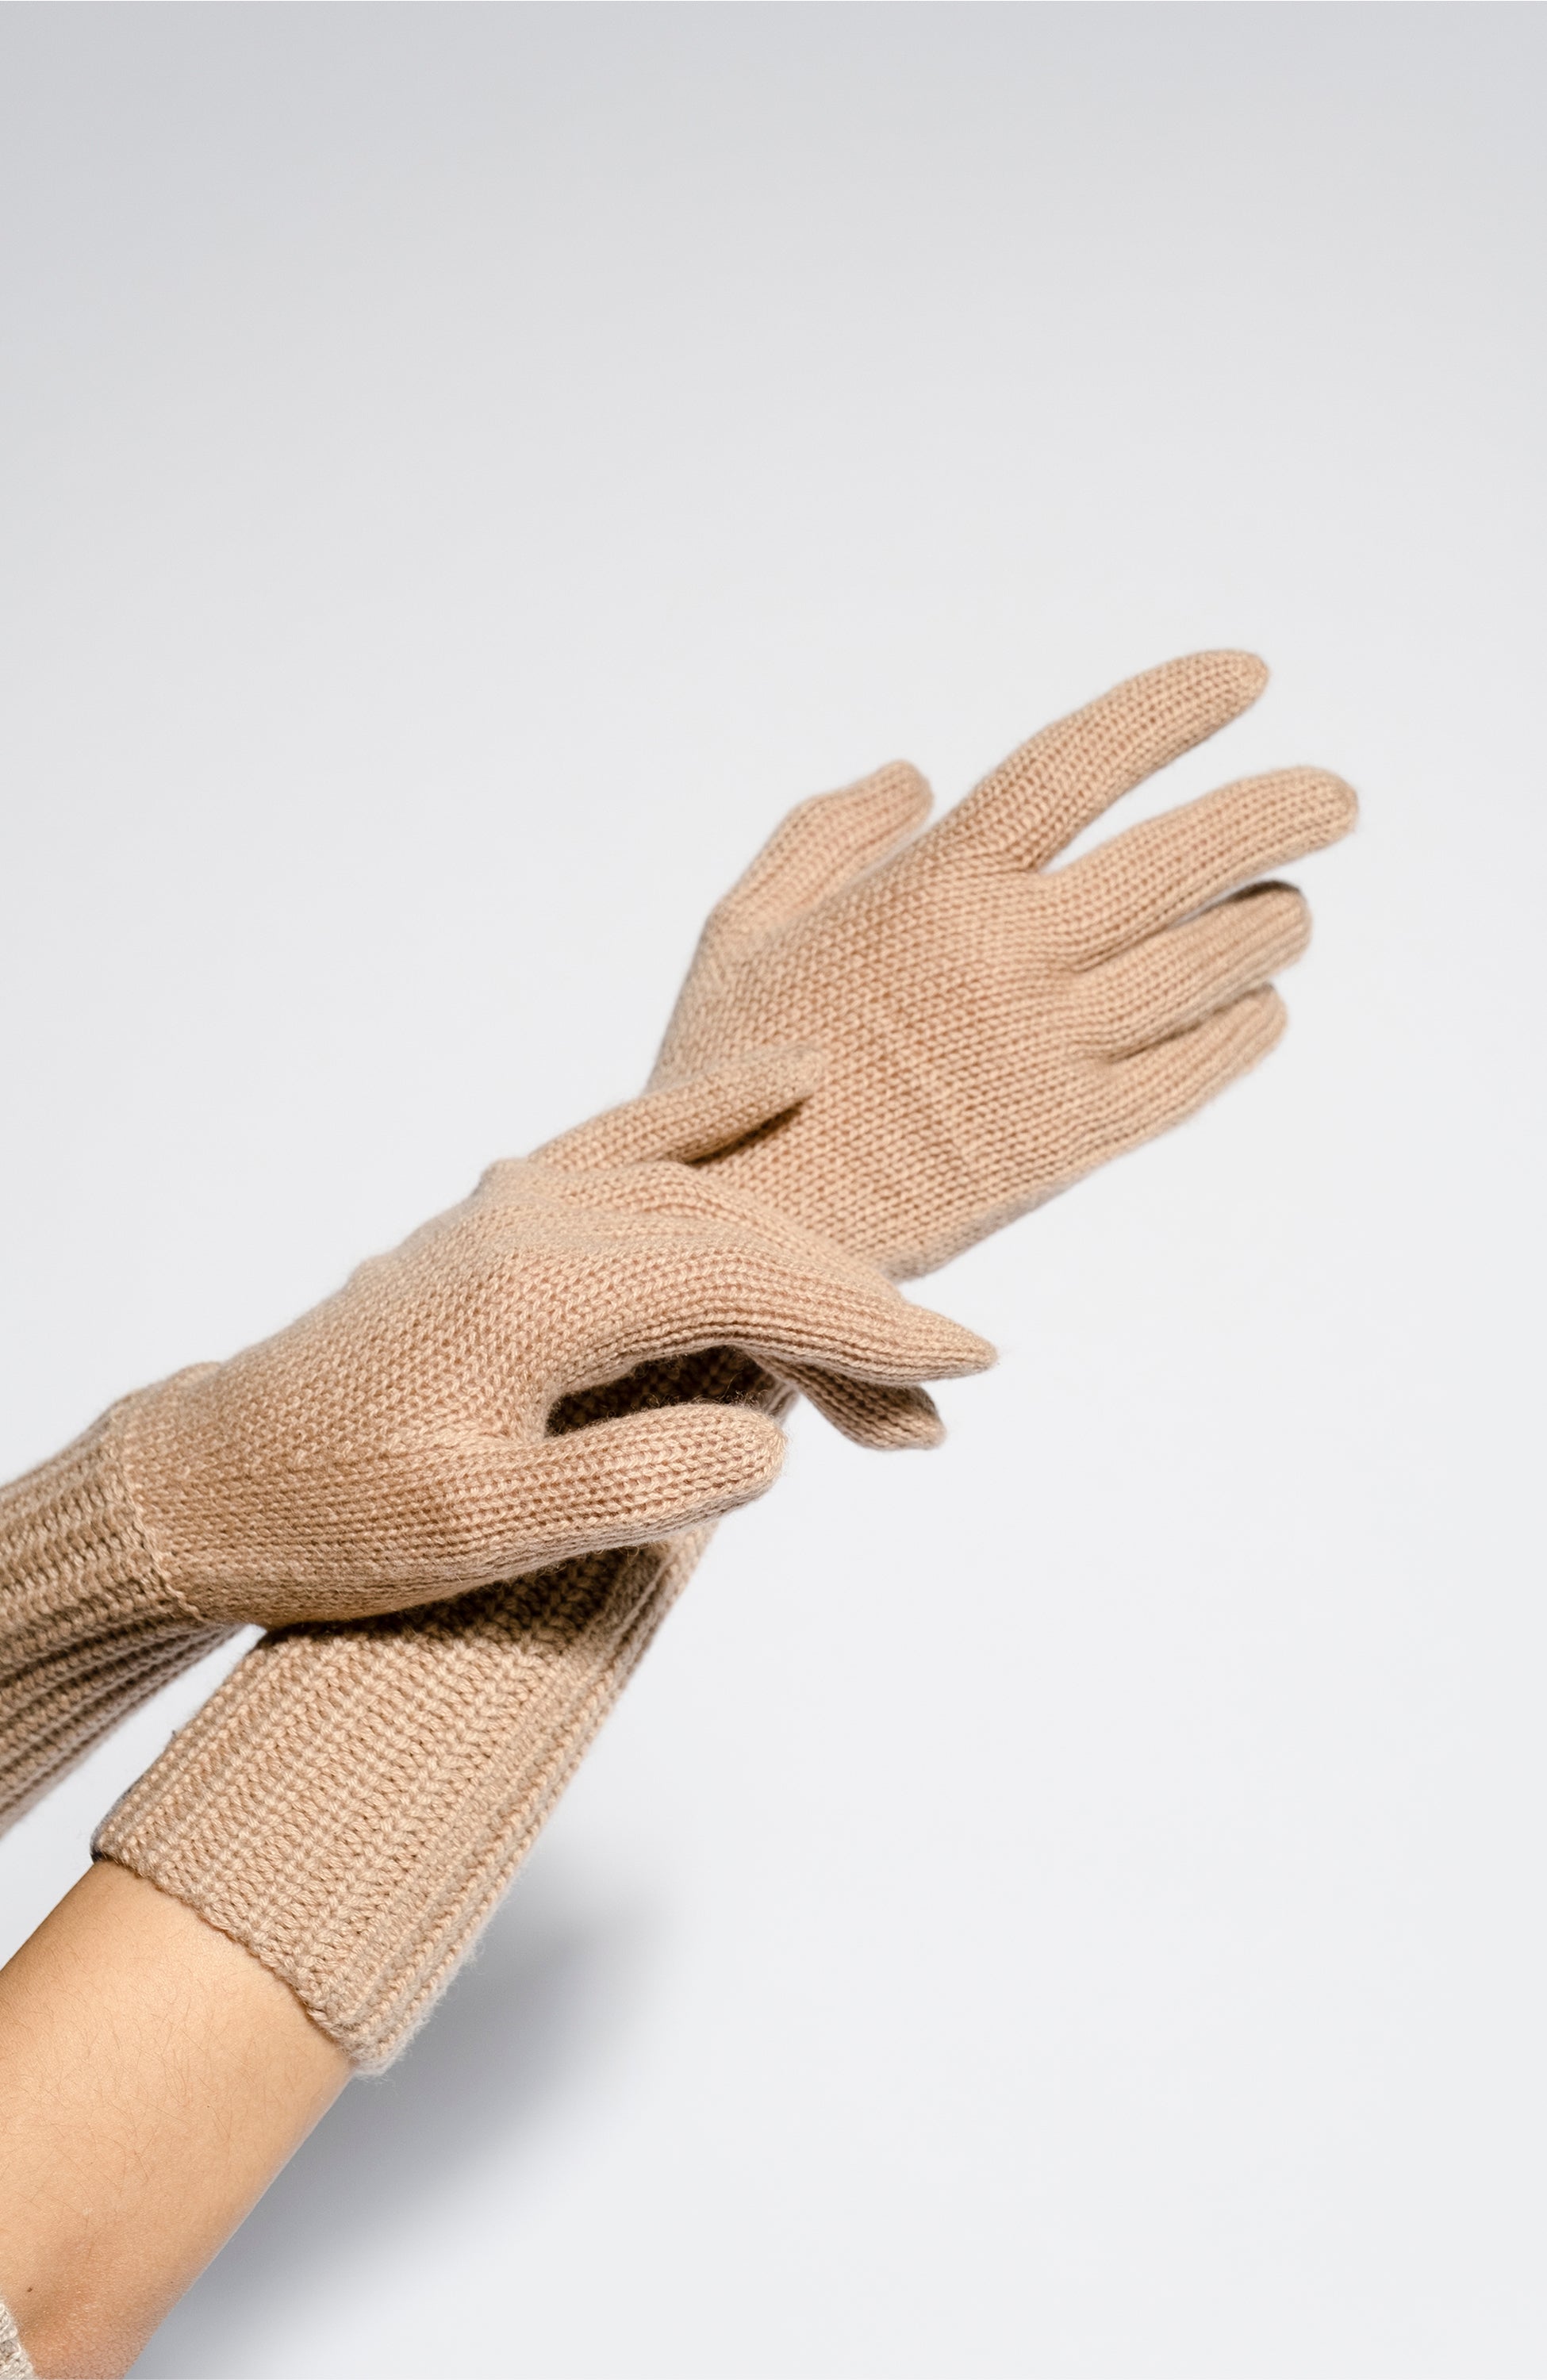 Turn-up cuff gloves